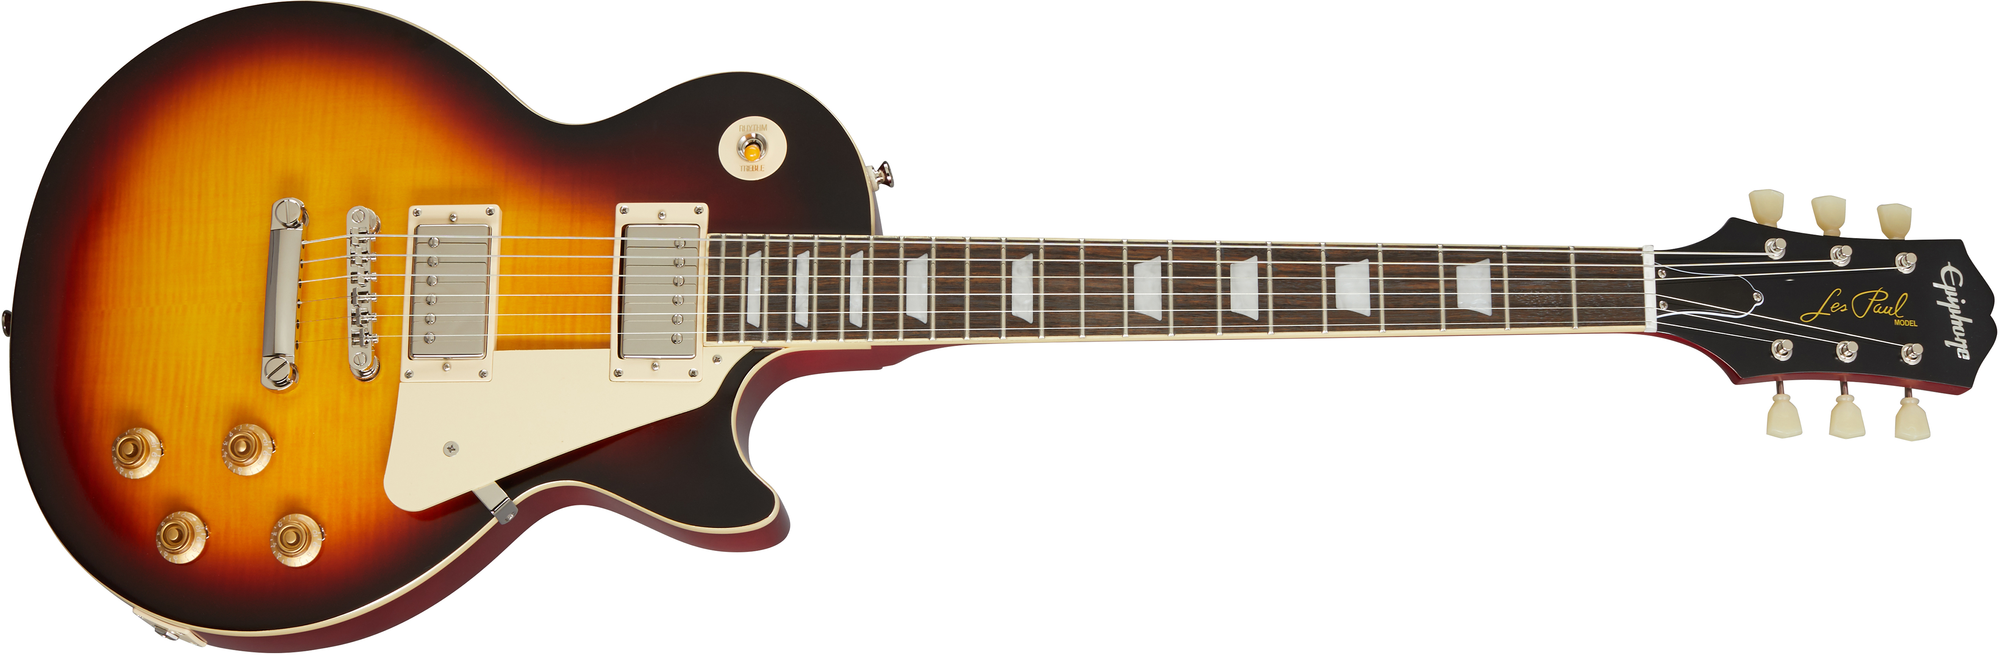 Billede af Epiphone 1959 Les Paul Standard Outfit El-guitar (Aged Dark Burst)